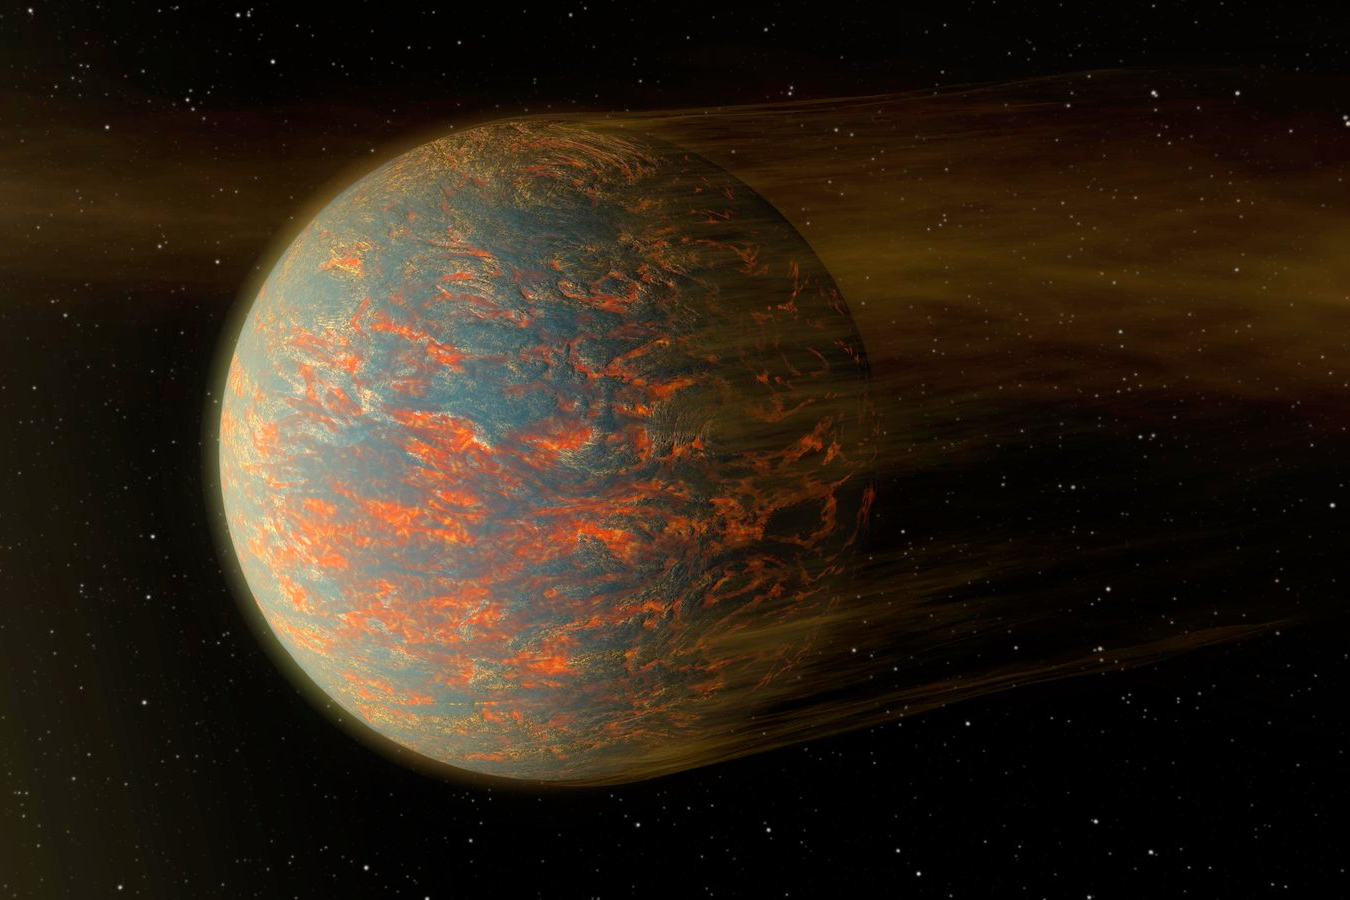 An artistic representation of the exoplanet 55 Cancri e. (Credit: NASA/JPL-Caltech)